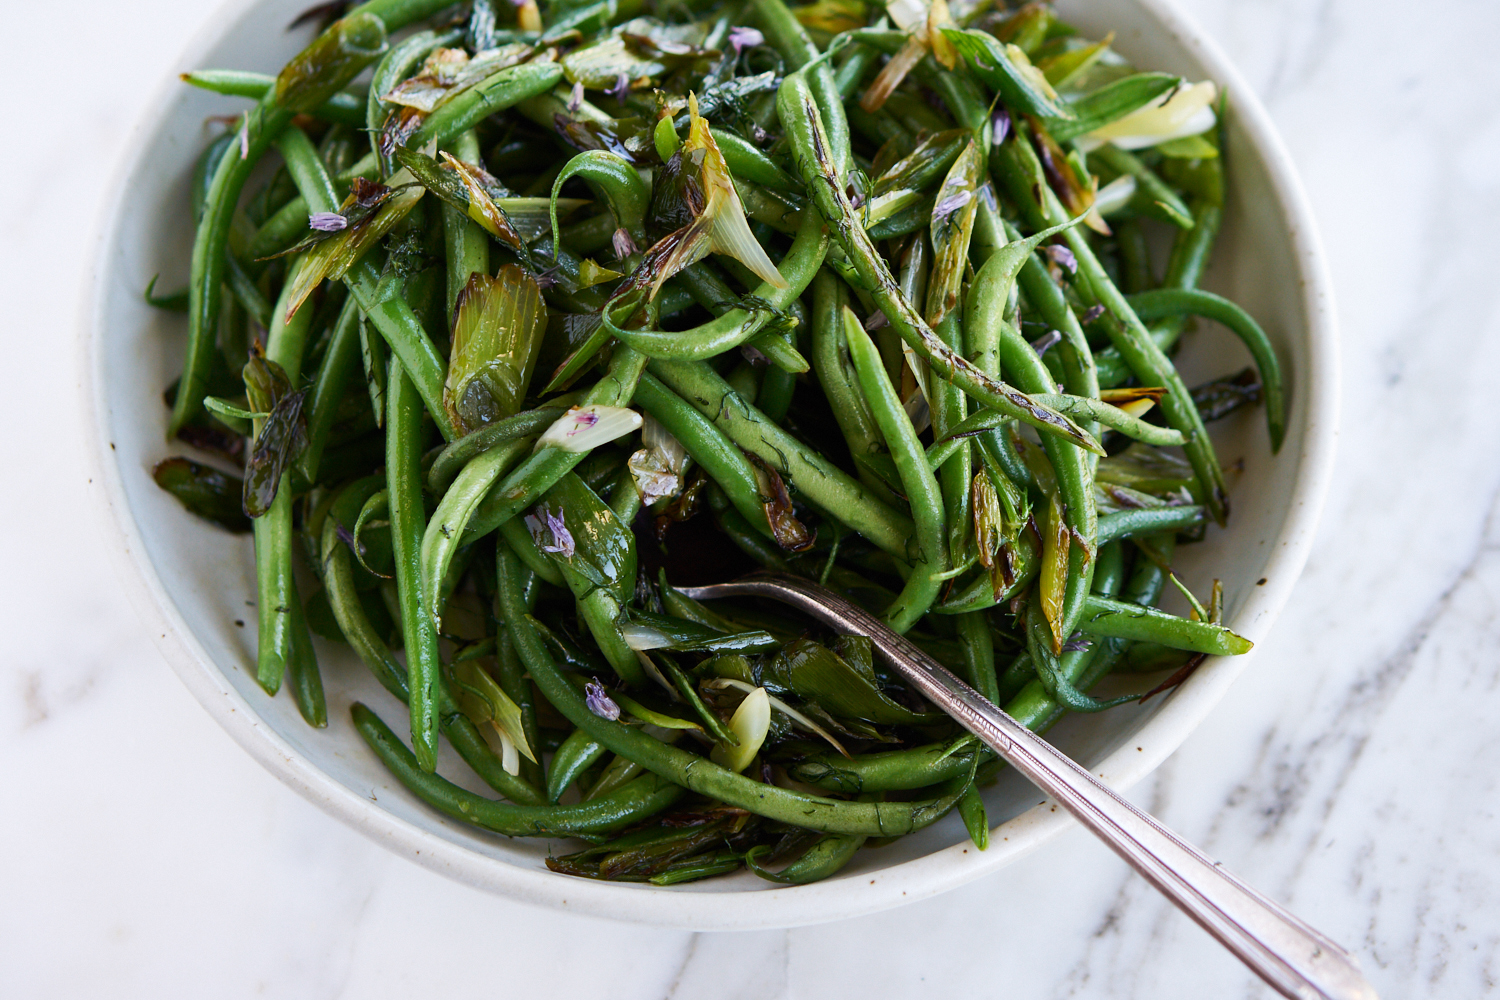 Vibrant Tasty Green Beans Recipe - 101 Cookbooks